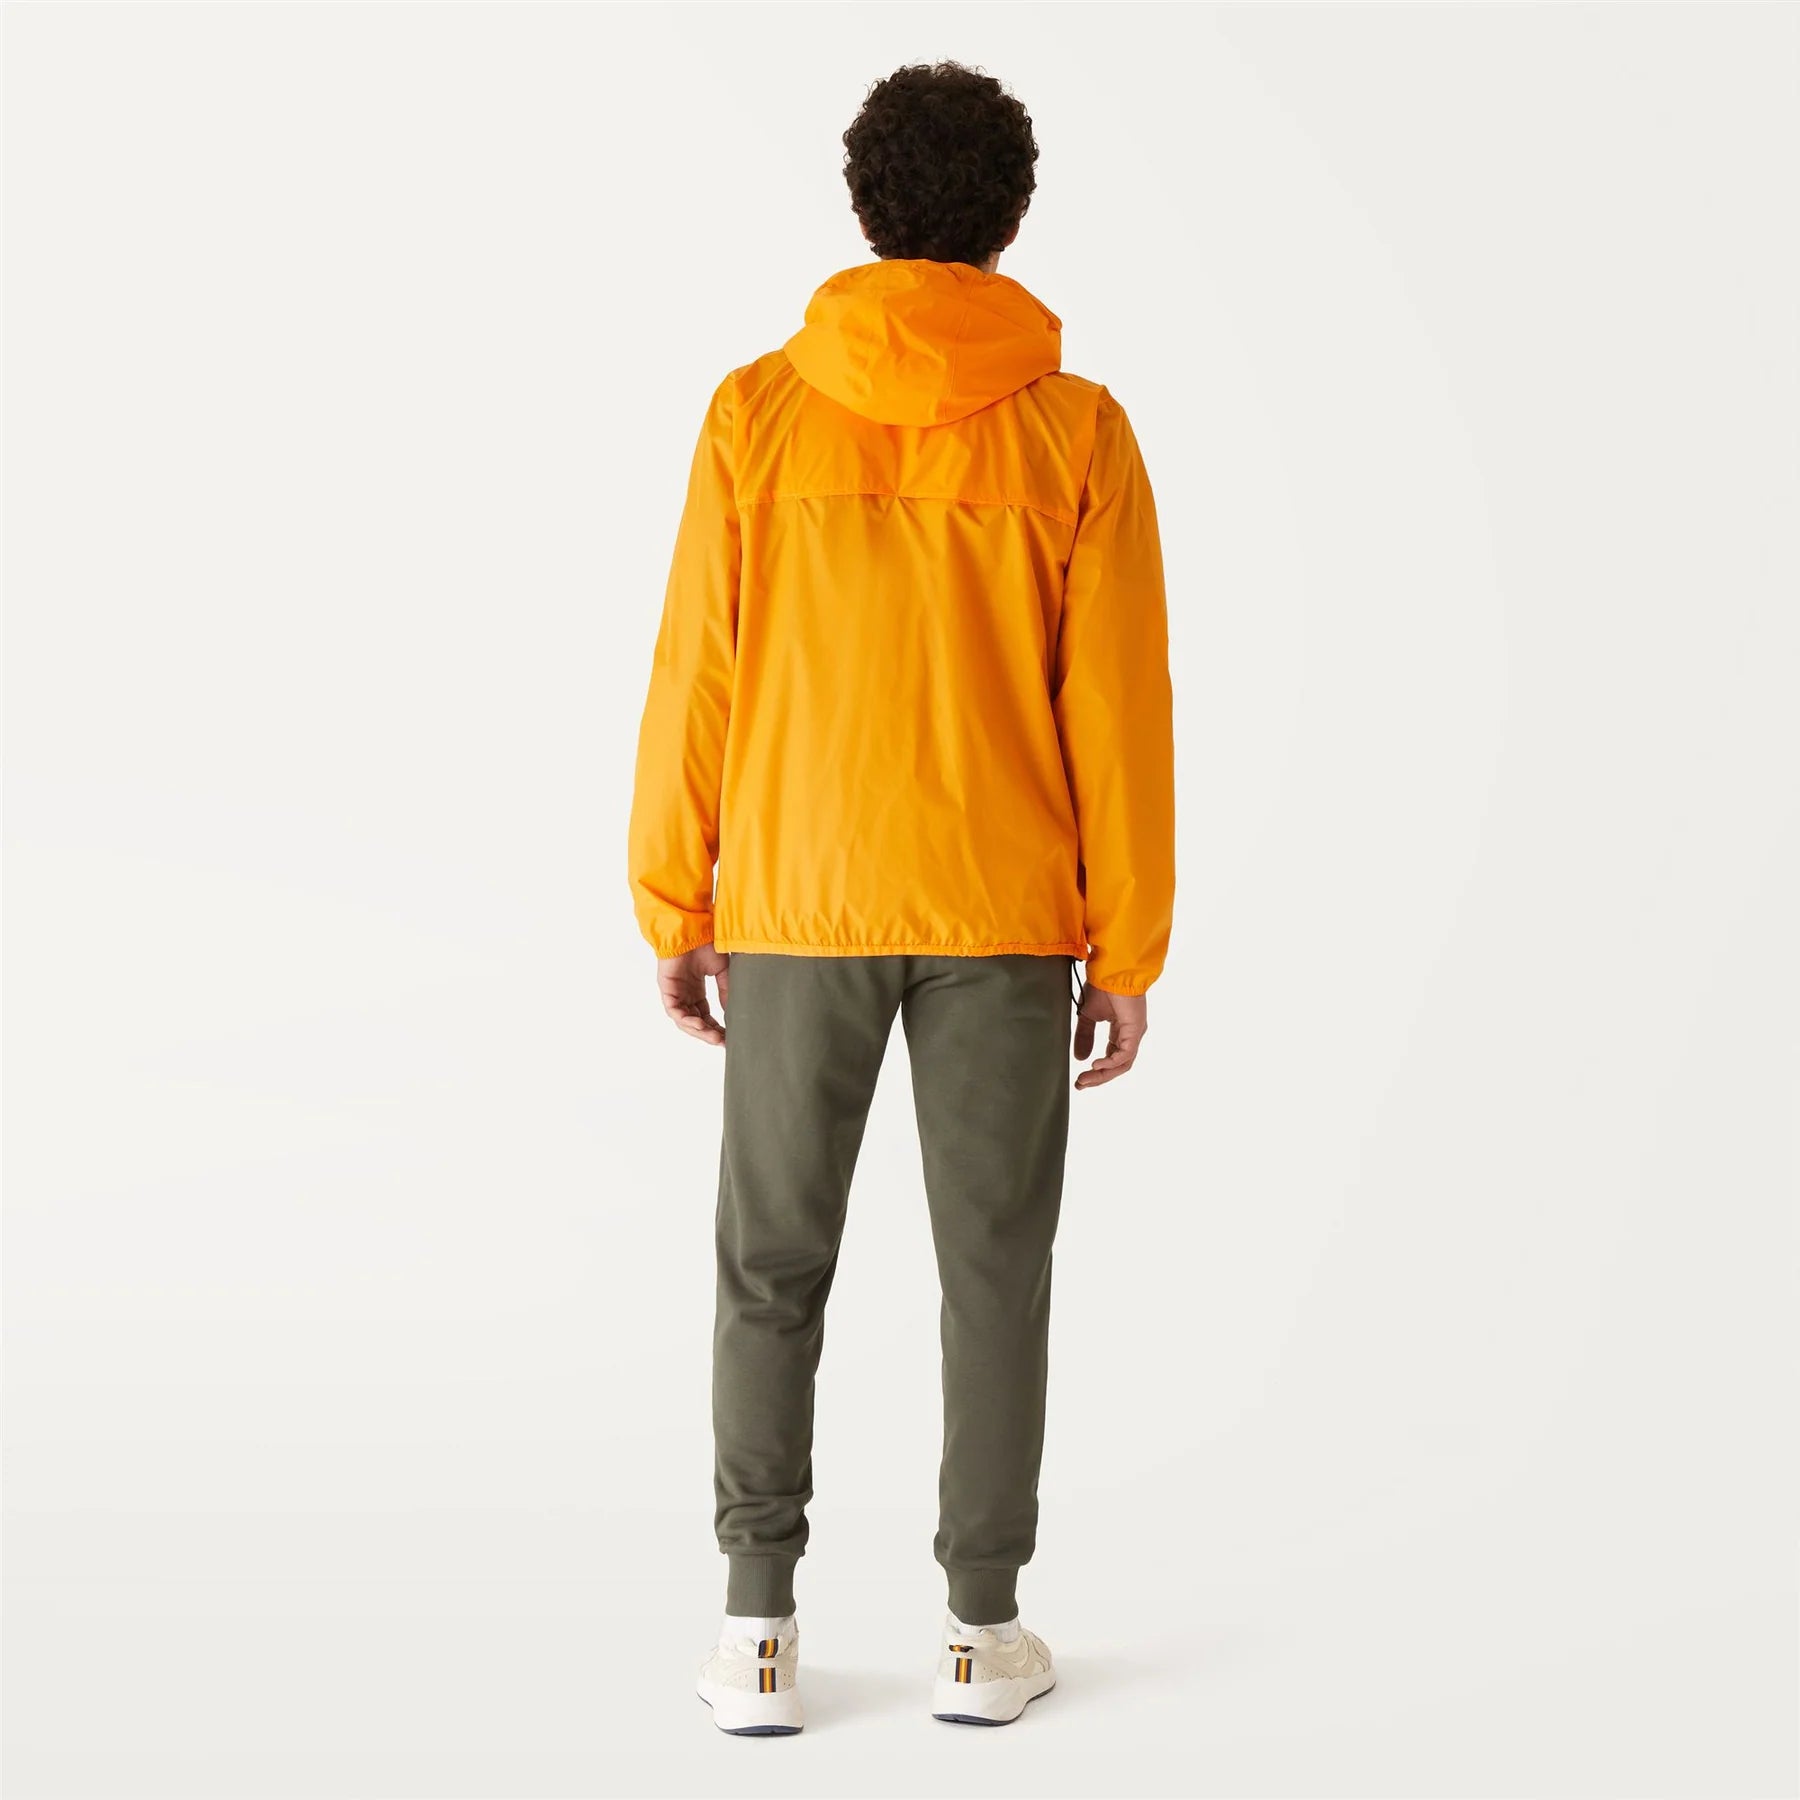 Claude - Kids Packable Full Zip Rain Jacket in Orange